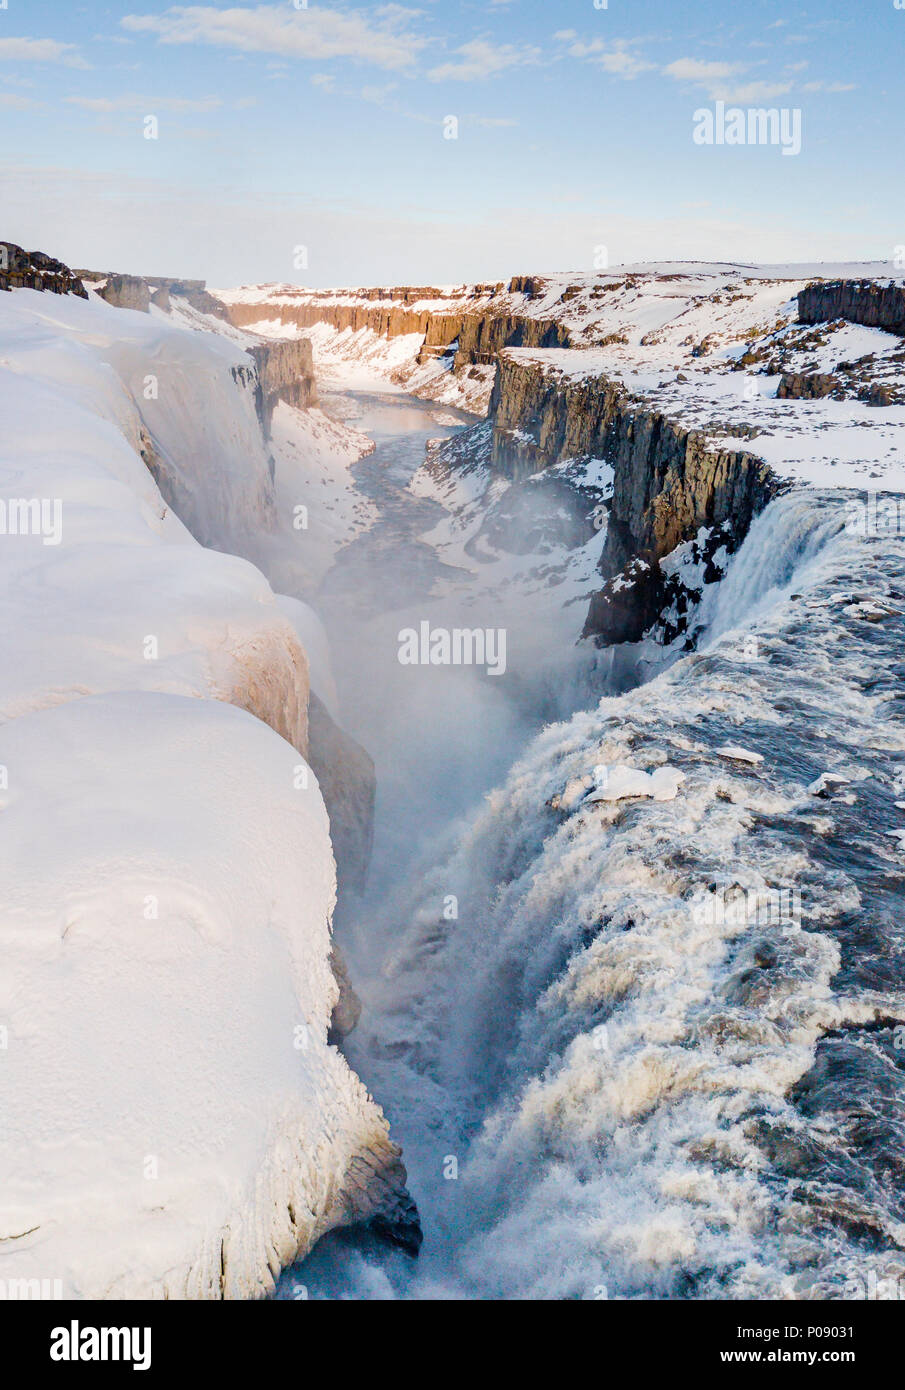 Vista aerea, paesaggio innevato, gorge, canyon con la caduta di masse d'acqua, Dettifoss cascata in inverno, Nord Islanda Islanda Foto Stock